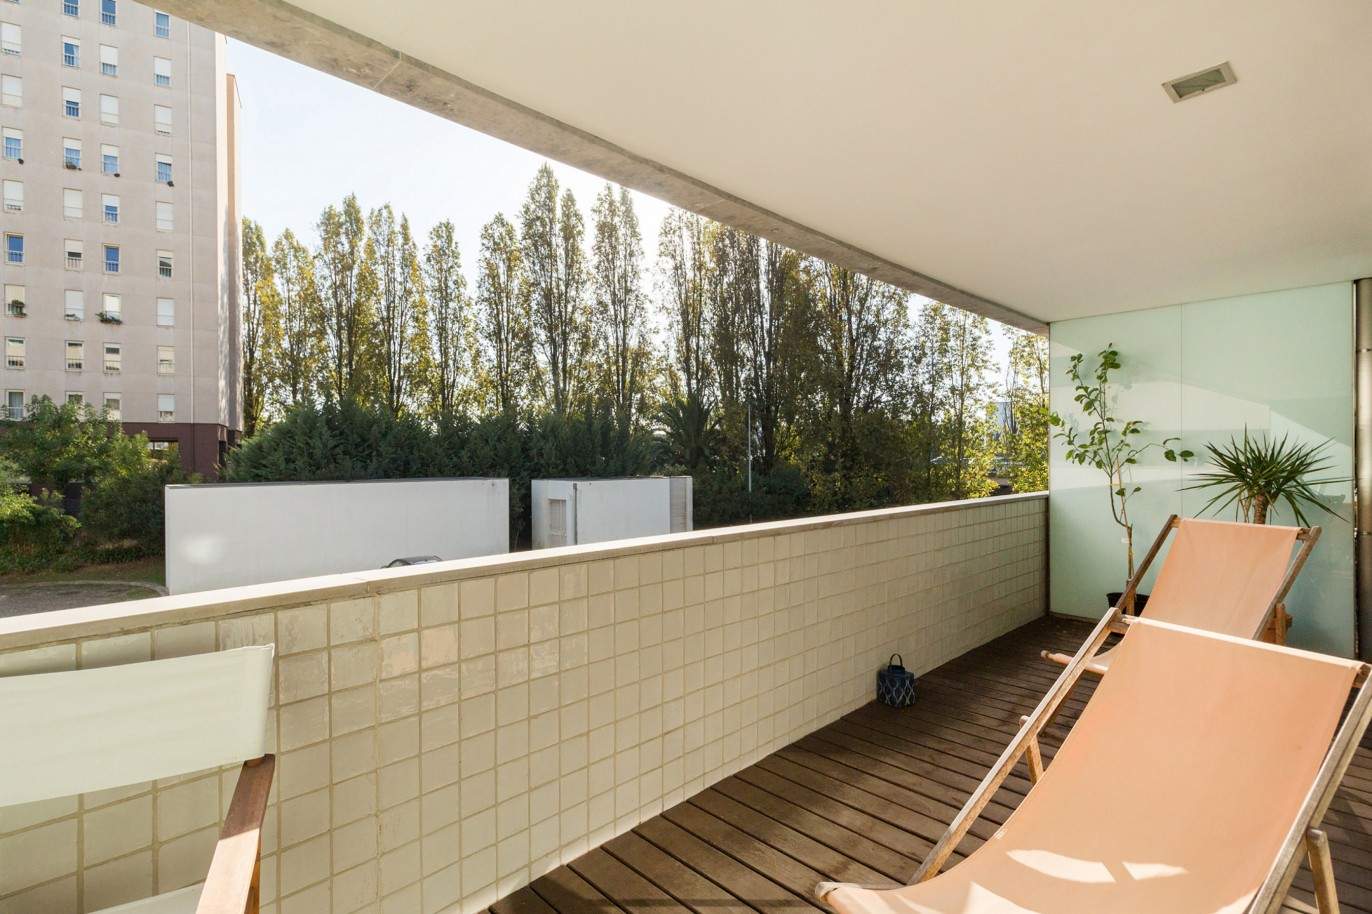 Duplexwohnung mit Balkon, zu verkaufen, in Boavista, Porto, Portugal_210335